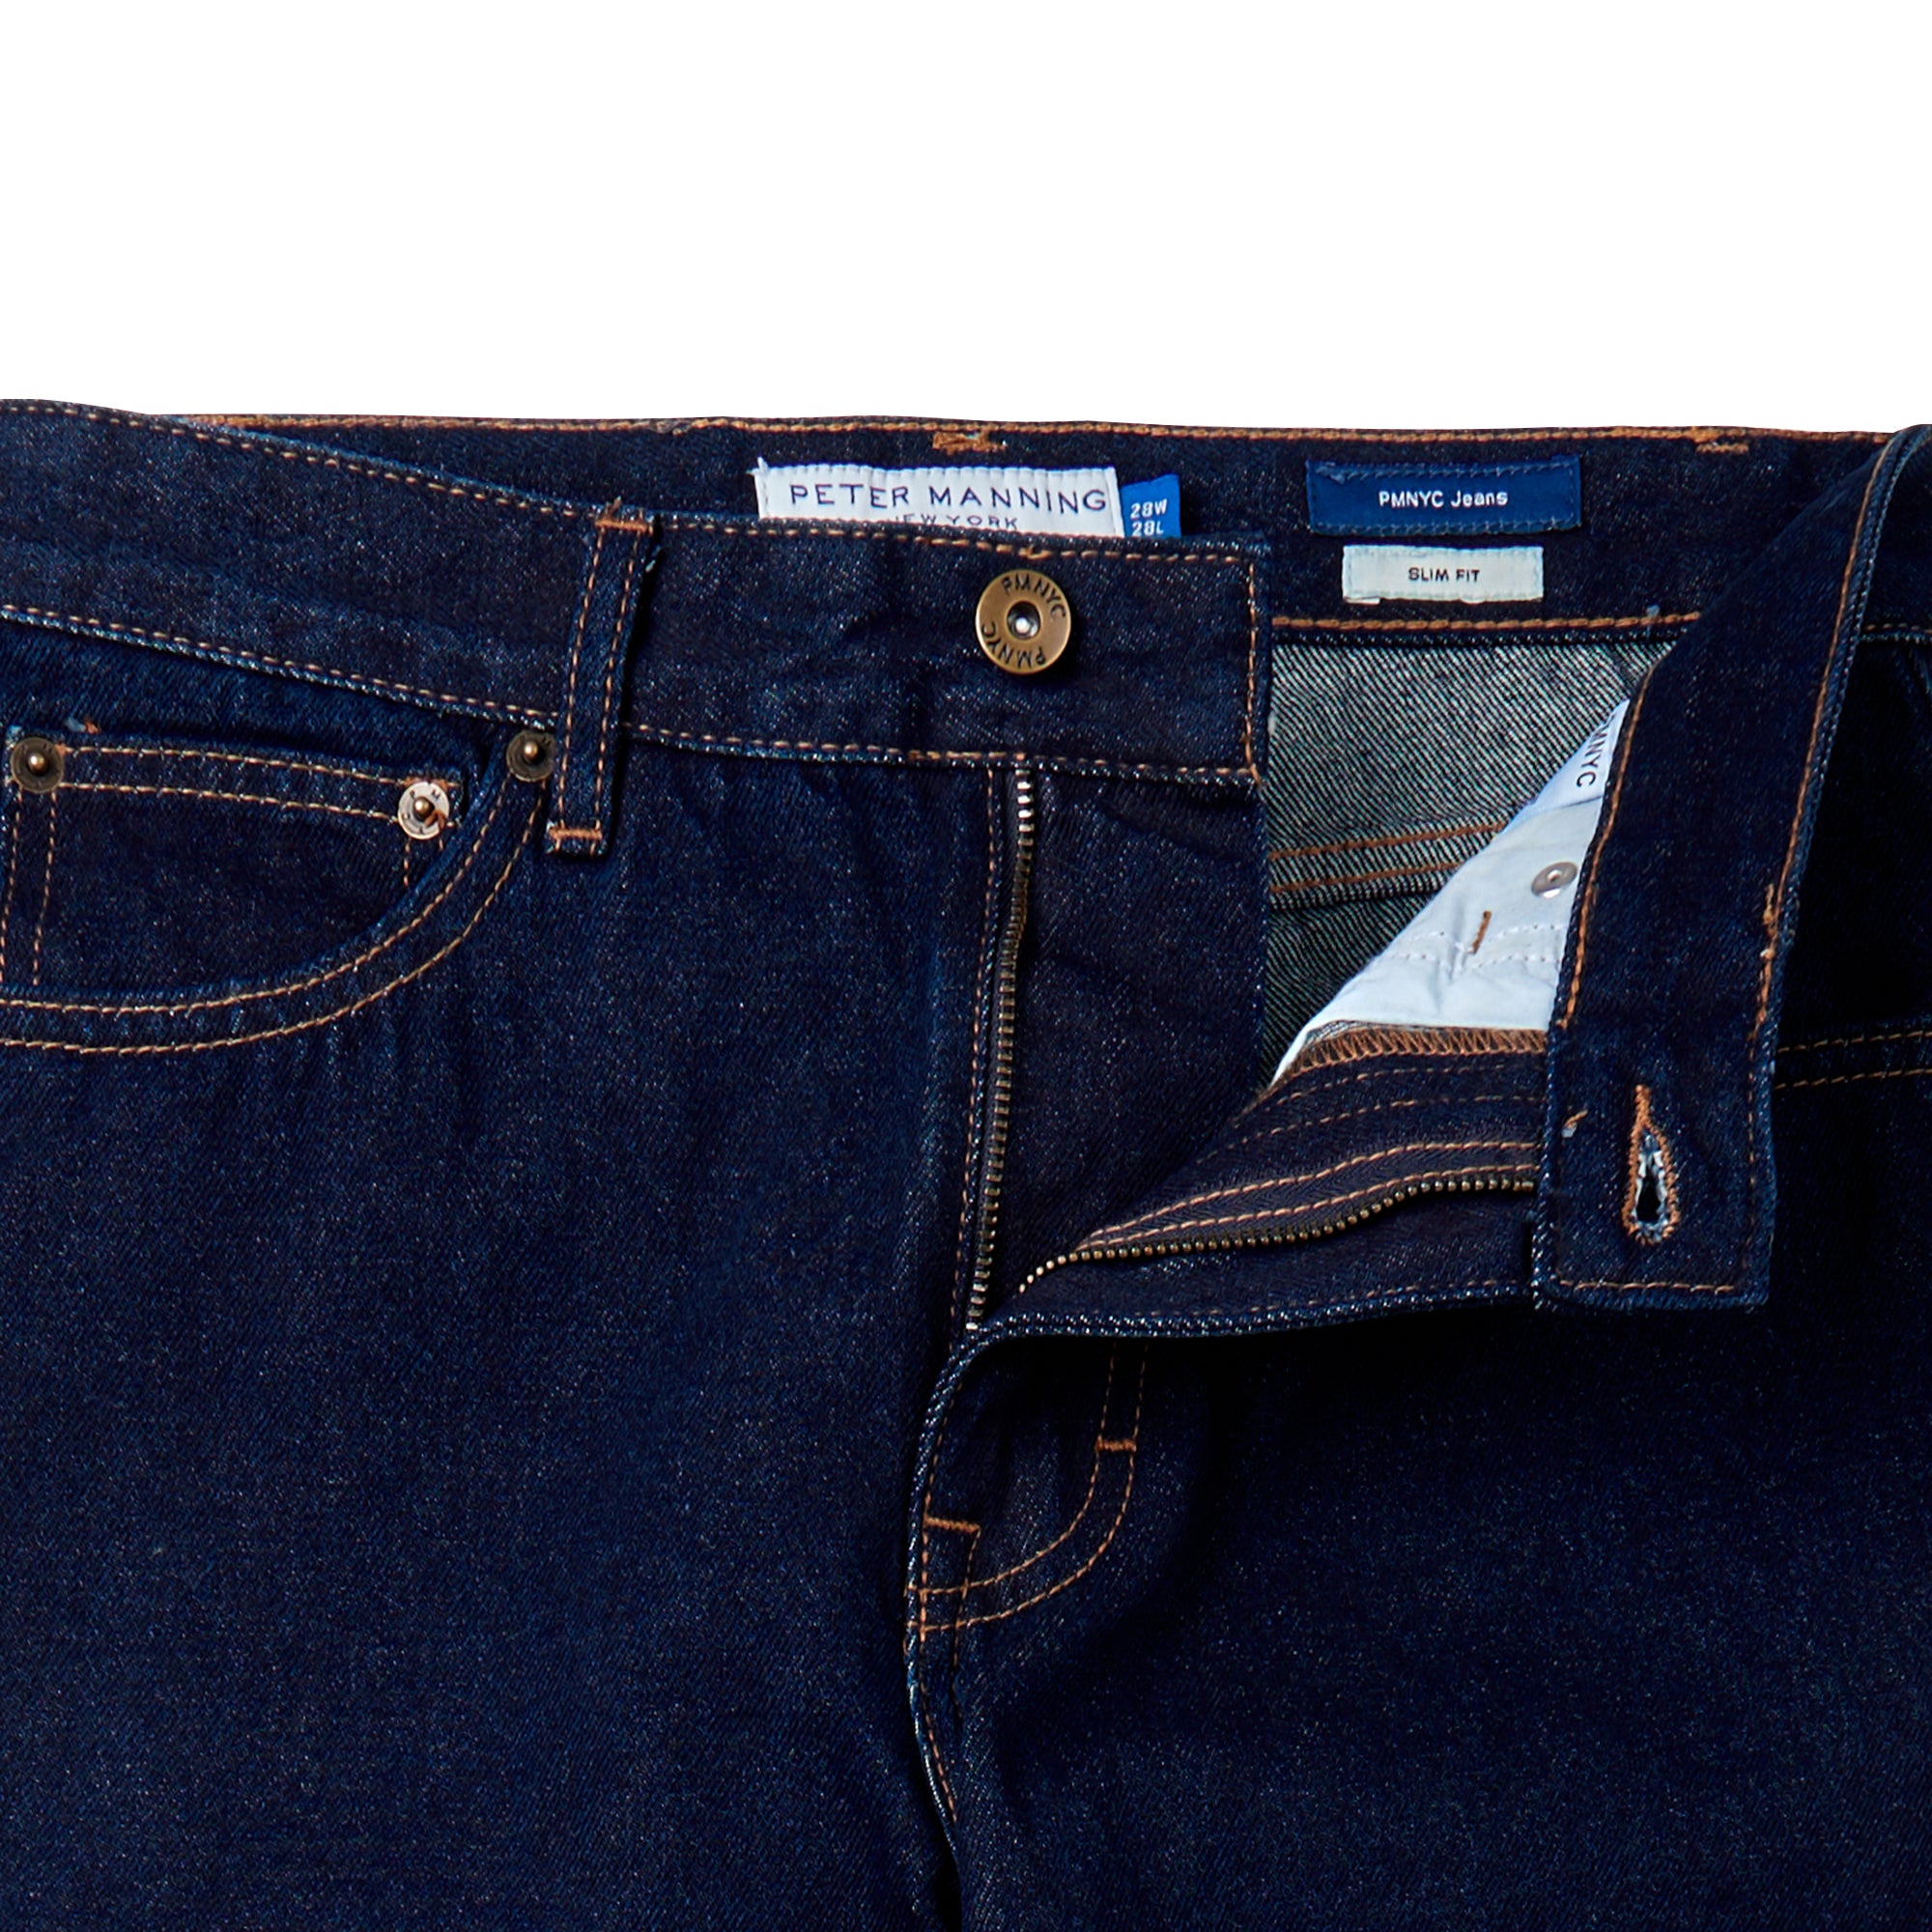 PMNYC Jeans Slim Fit - Dark Indigo Wash